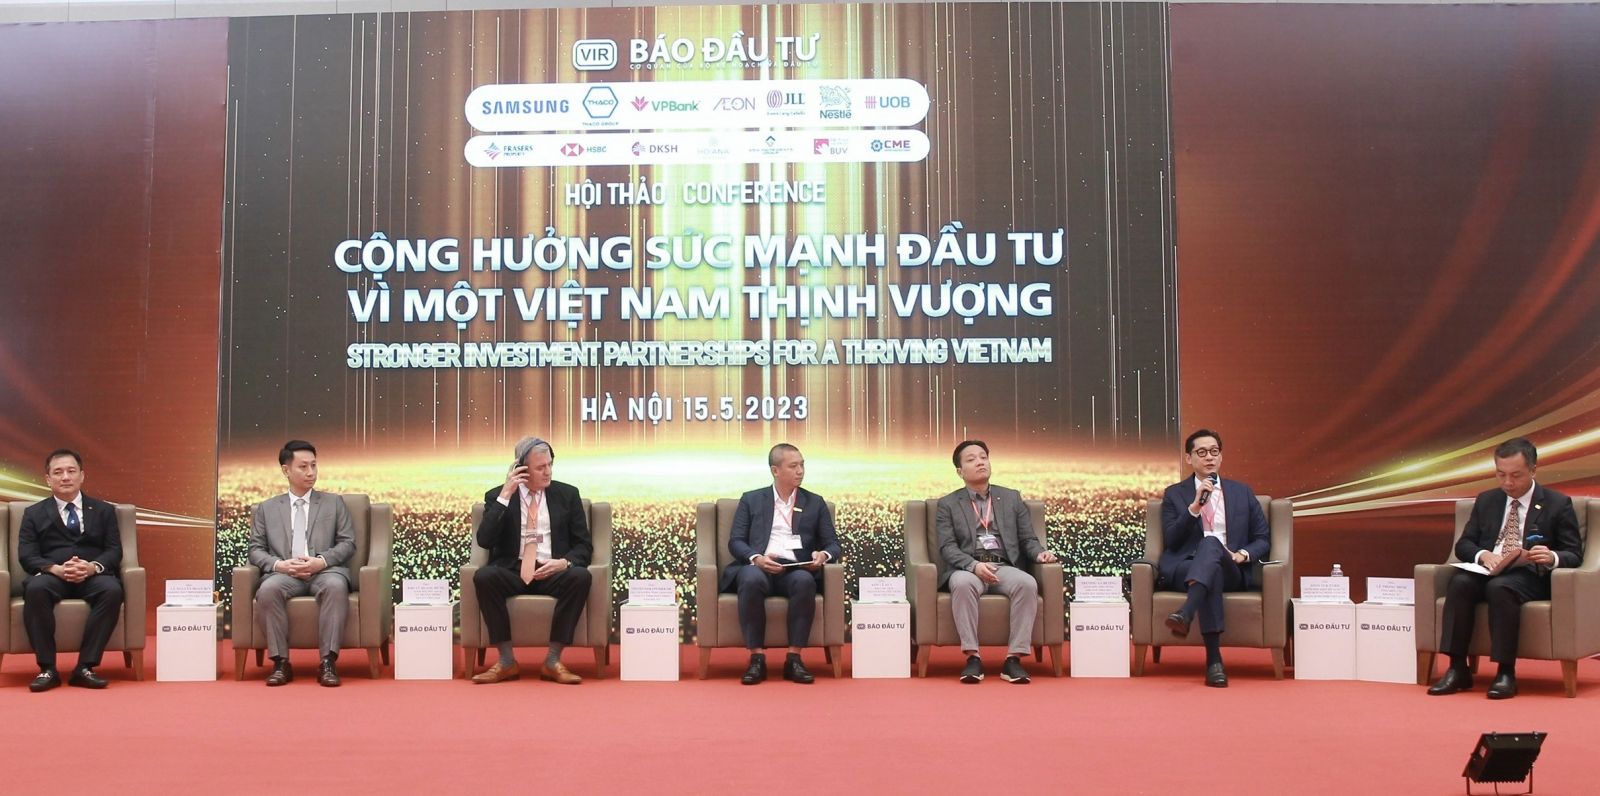 Các nhà đầu tư nước ngoài đánh giá cao tiềm năng phát triển và cam kết mở rộng đầu tư tại Việt Nam